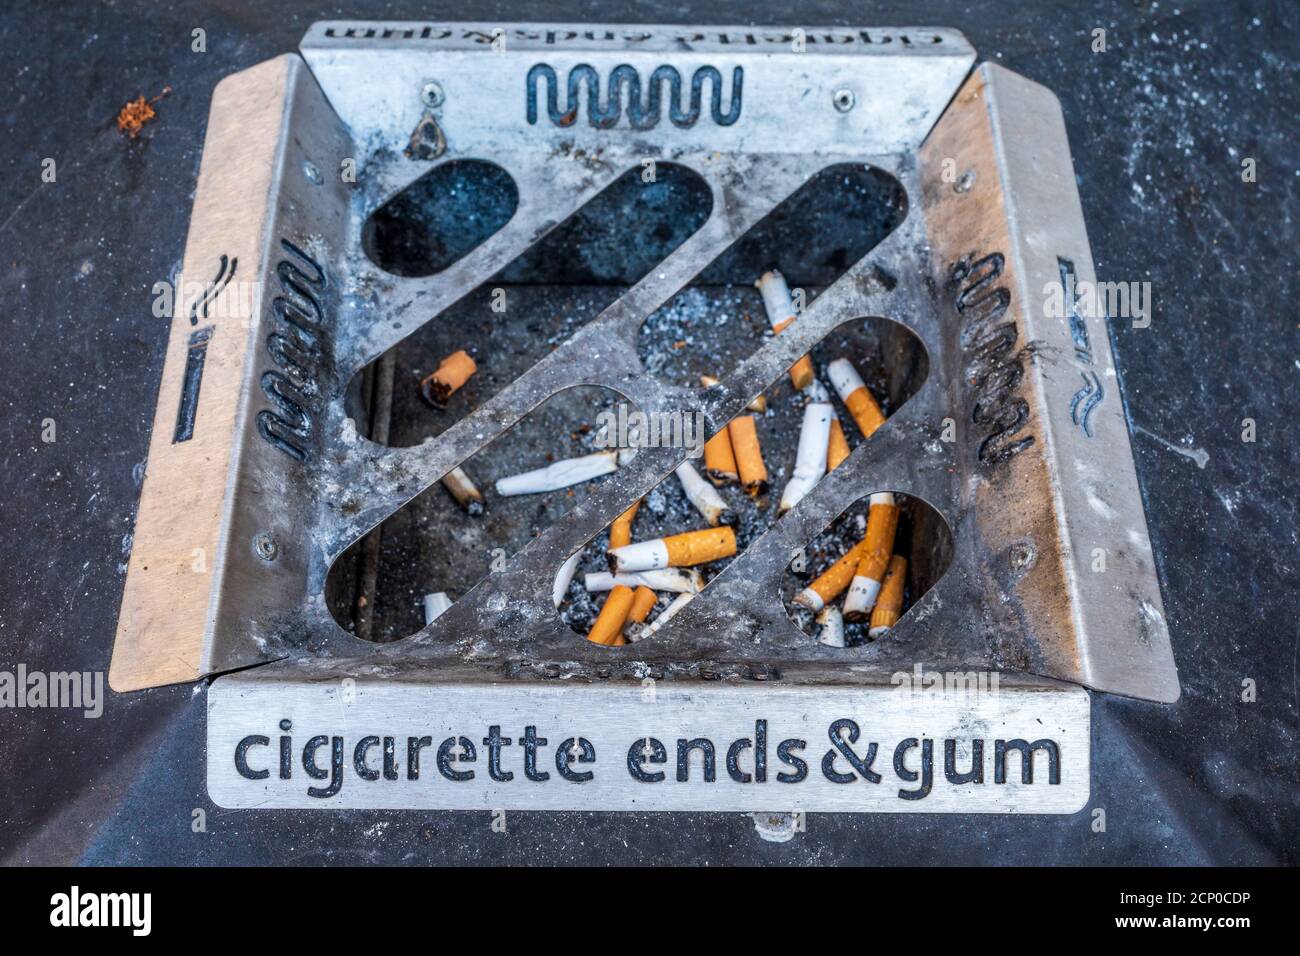 Zigarettenkippen und Gum Aschenbecher - Zigarettenkippen und Gum Tablett auf einem Abfalleimer. Stockfoto